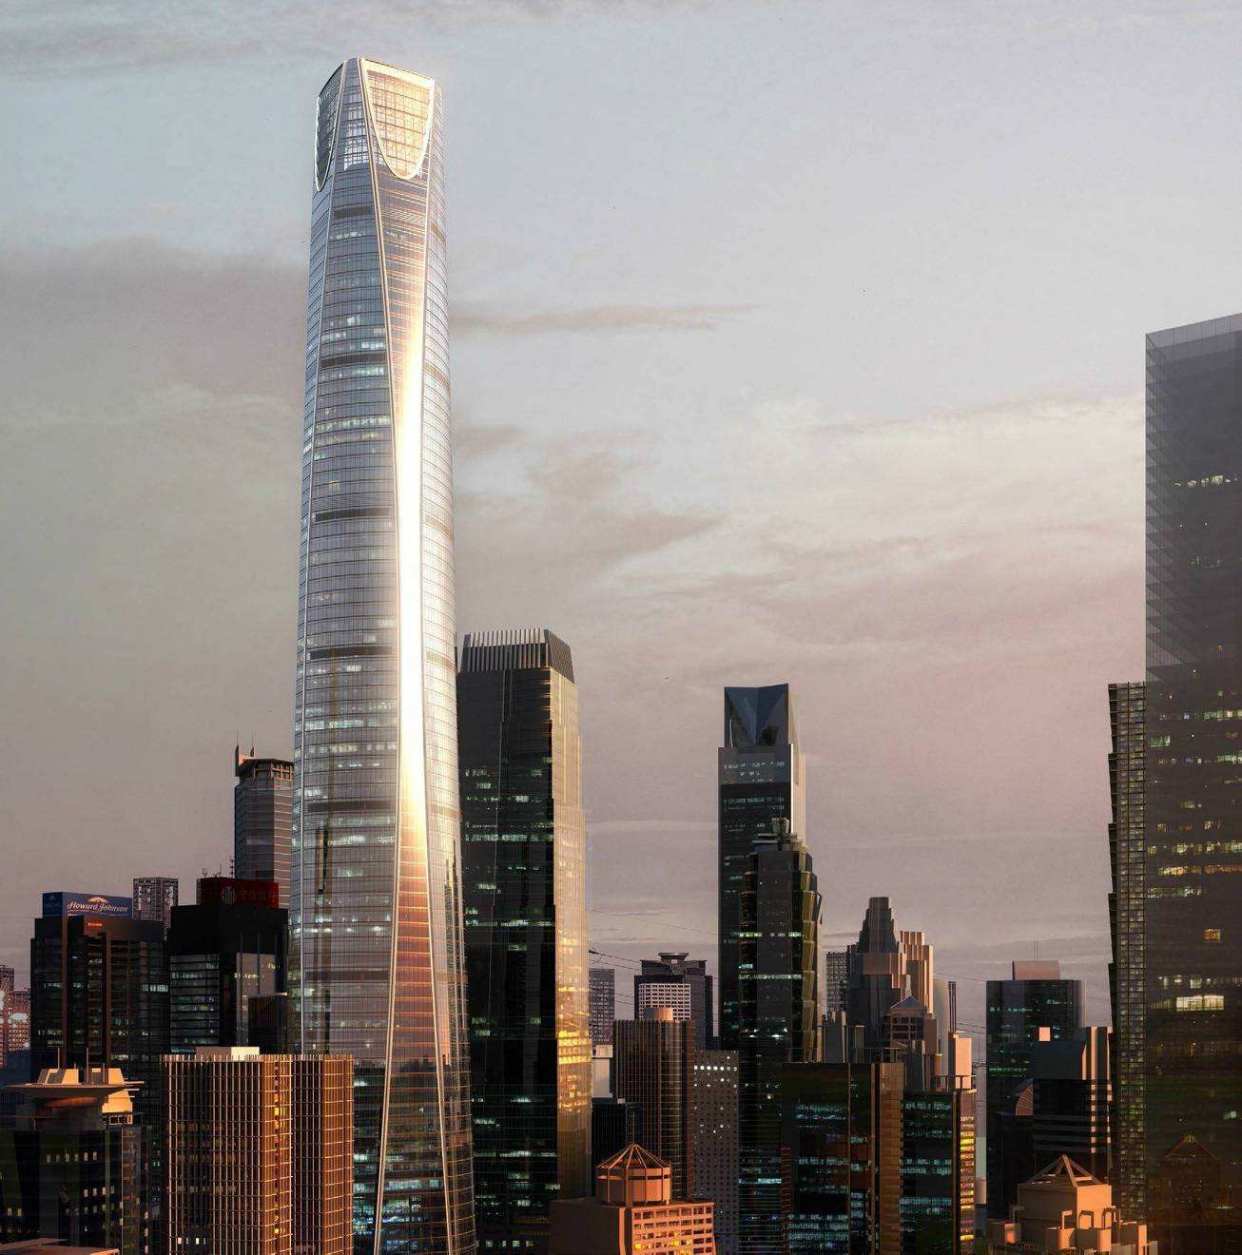 原创重庆建了很久的一个地标建筑高431米却频繁被质疑烂尾